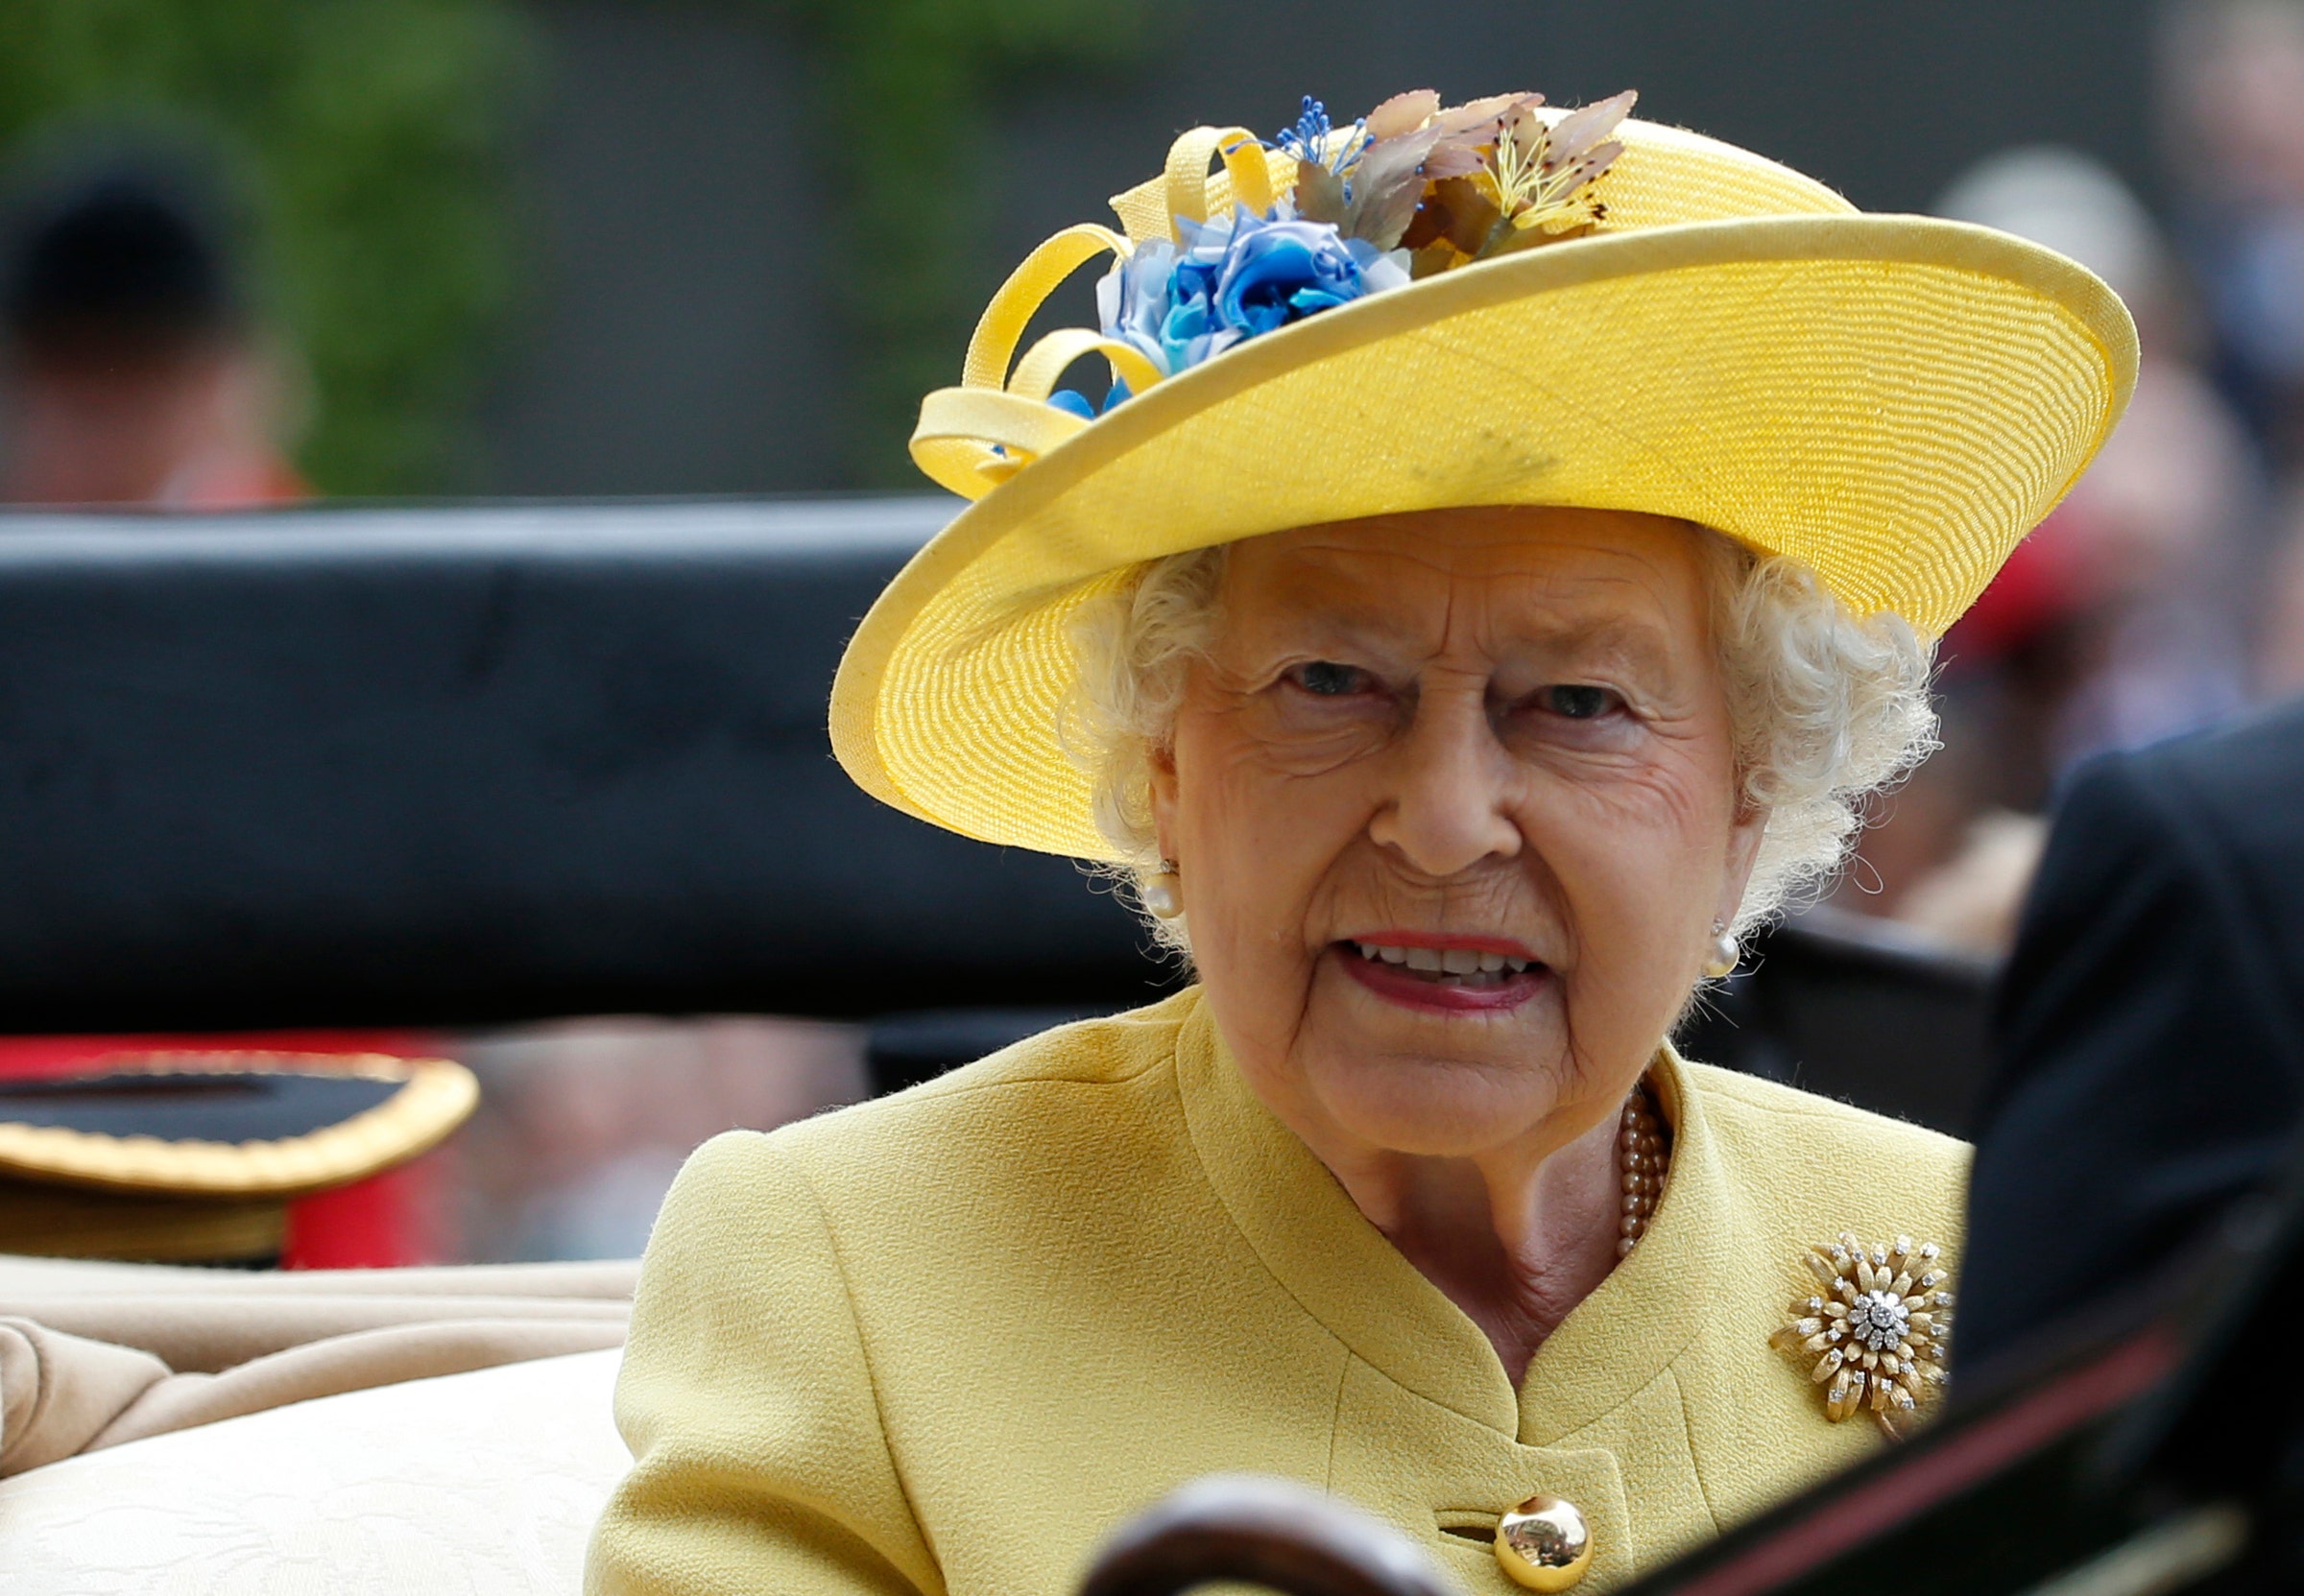 Queen Elizabeth postpones in-person event at Windsor amid Russia-Ukraine war